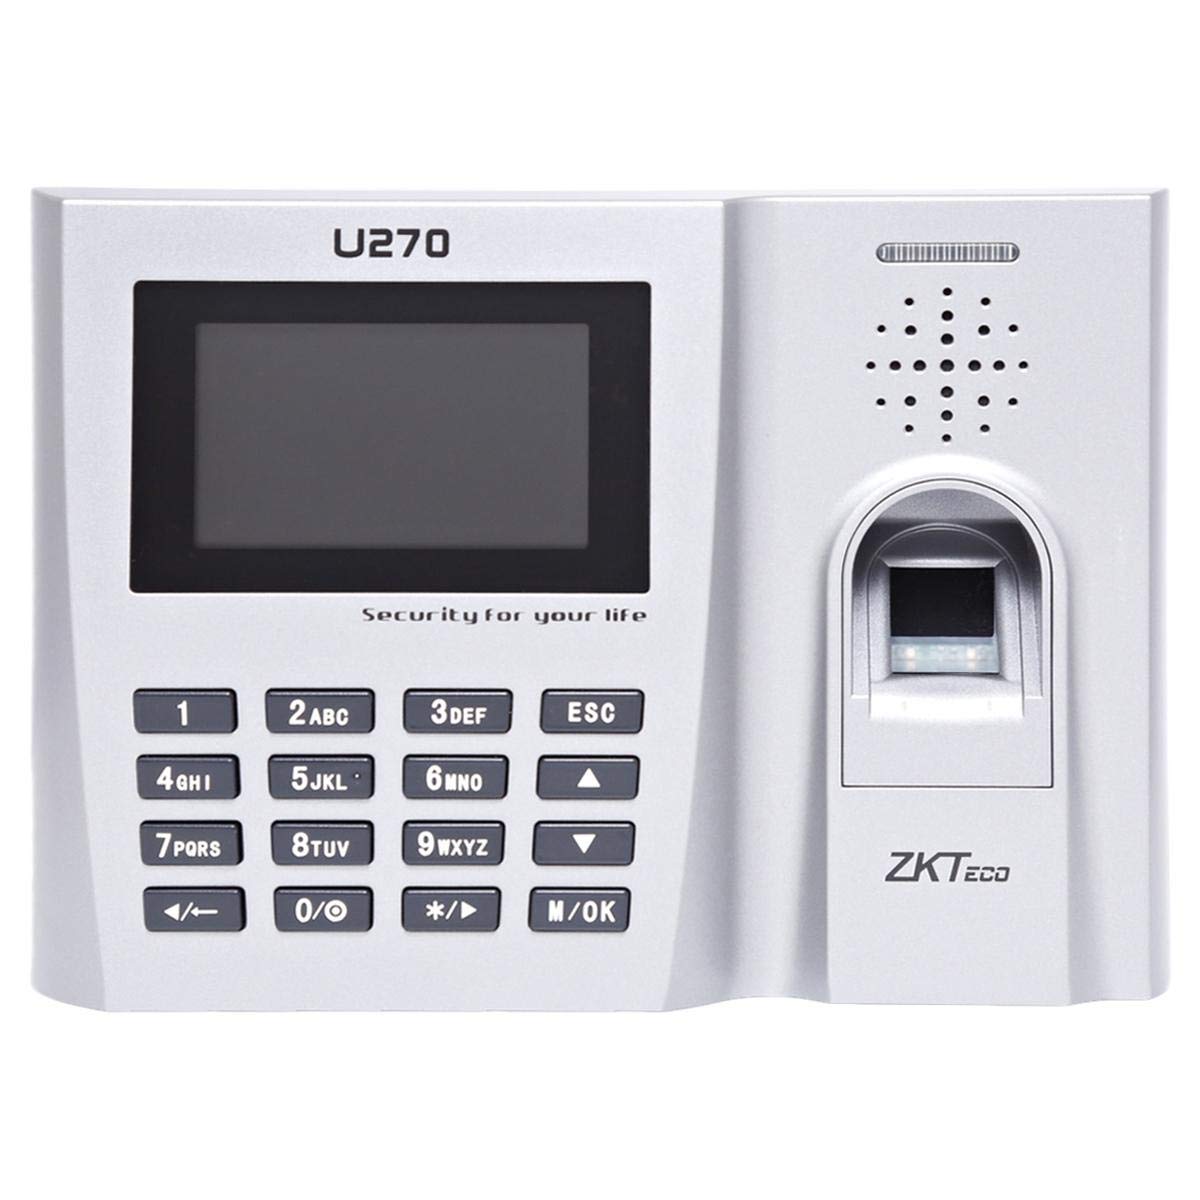 U270-ZKT Finger Printer